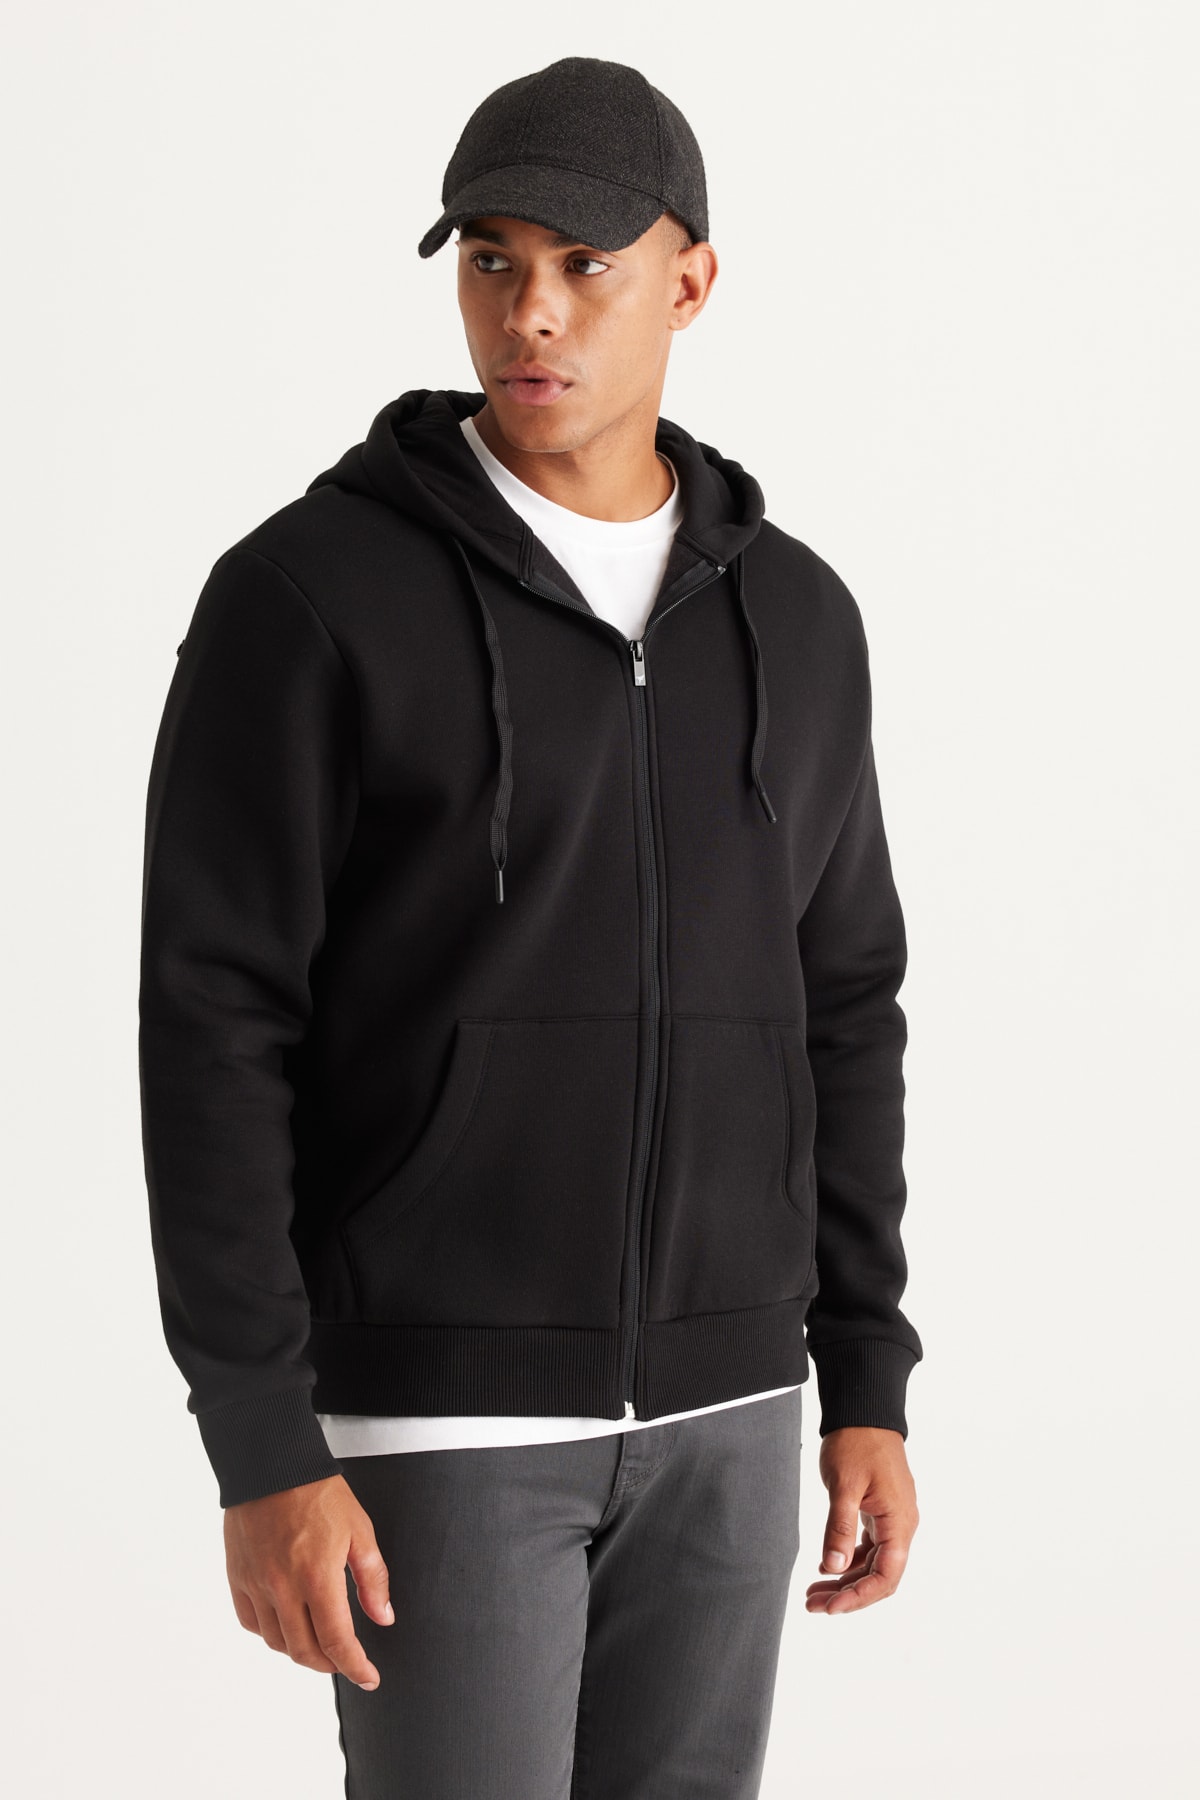 Levně AC&Co / Altınyıldız Classics Men's Black Standard Fit Regular-Fit Fleece 3 Thread Hooded Zipper Sweatshirt Jacket